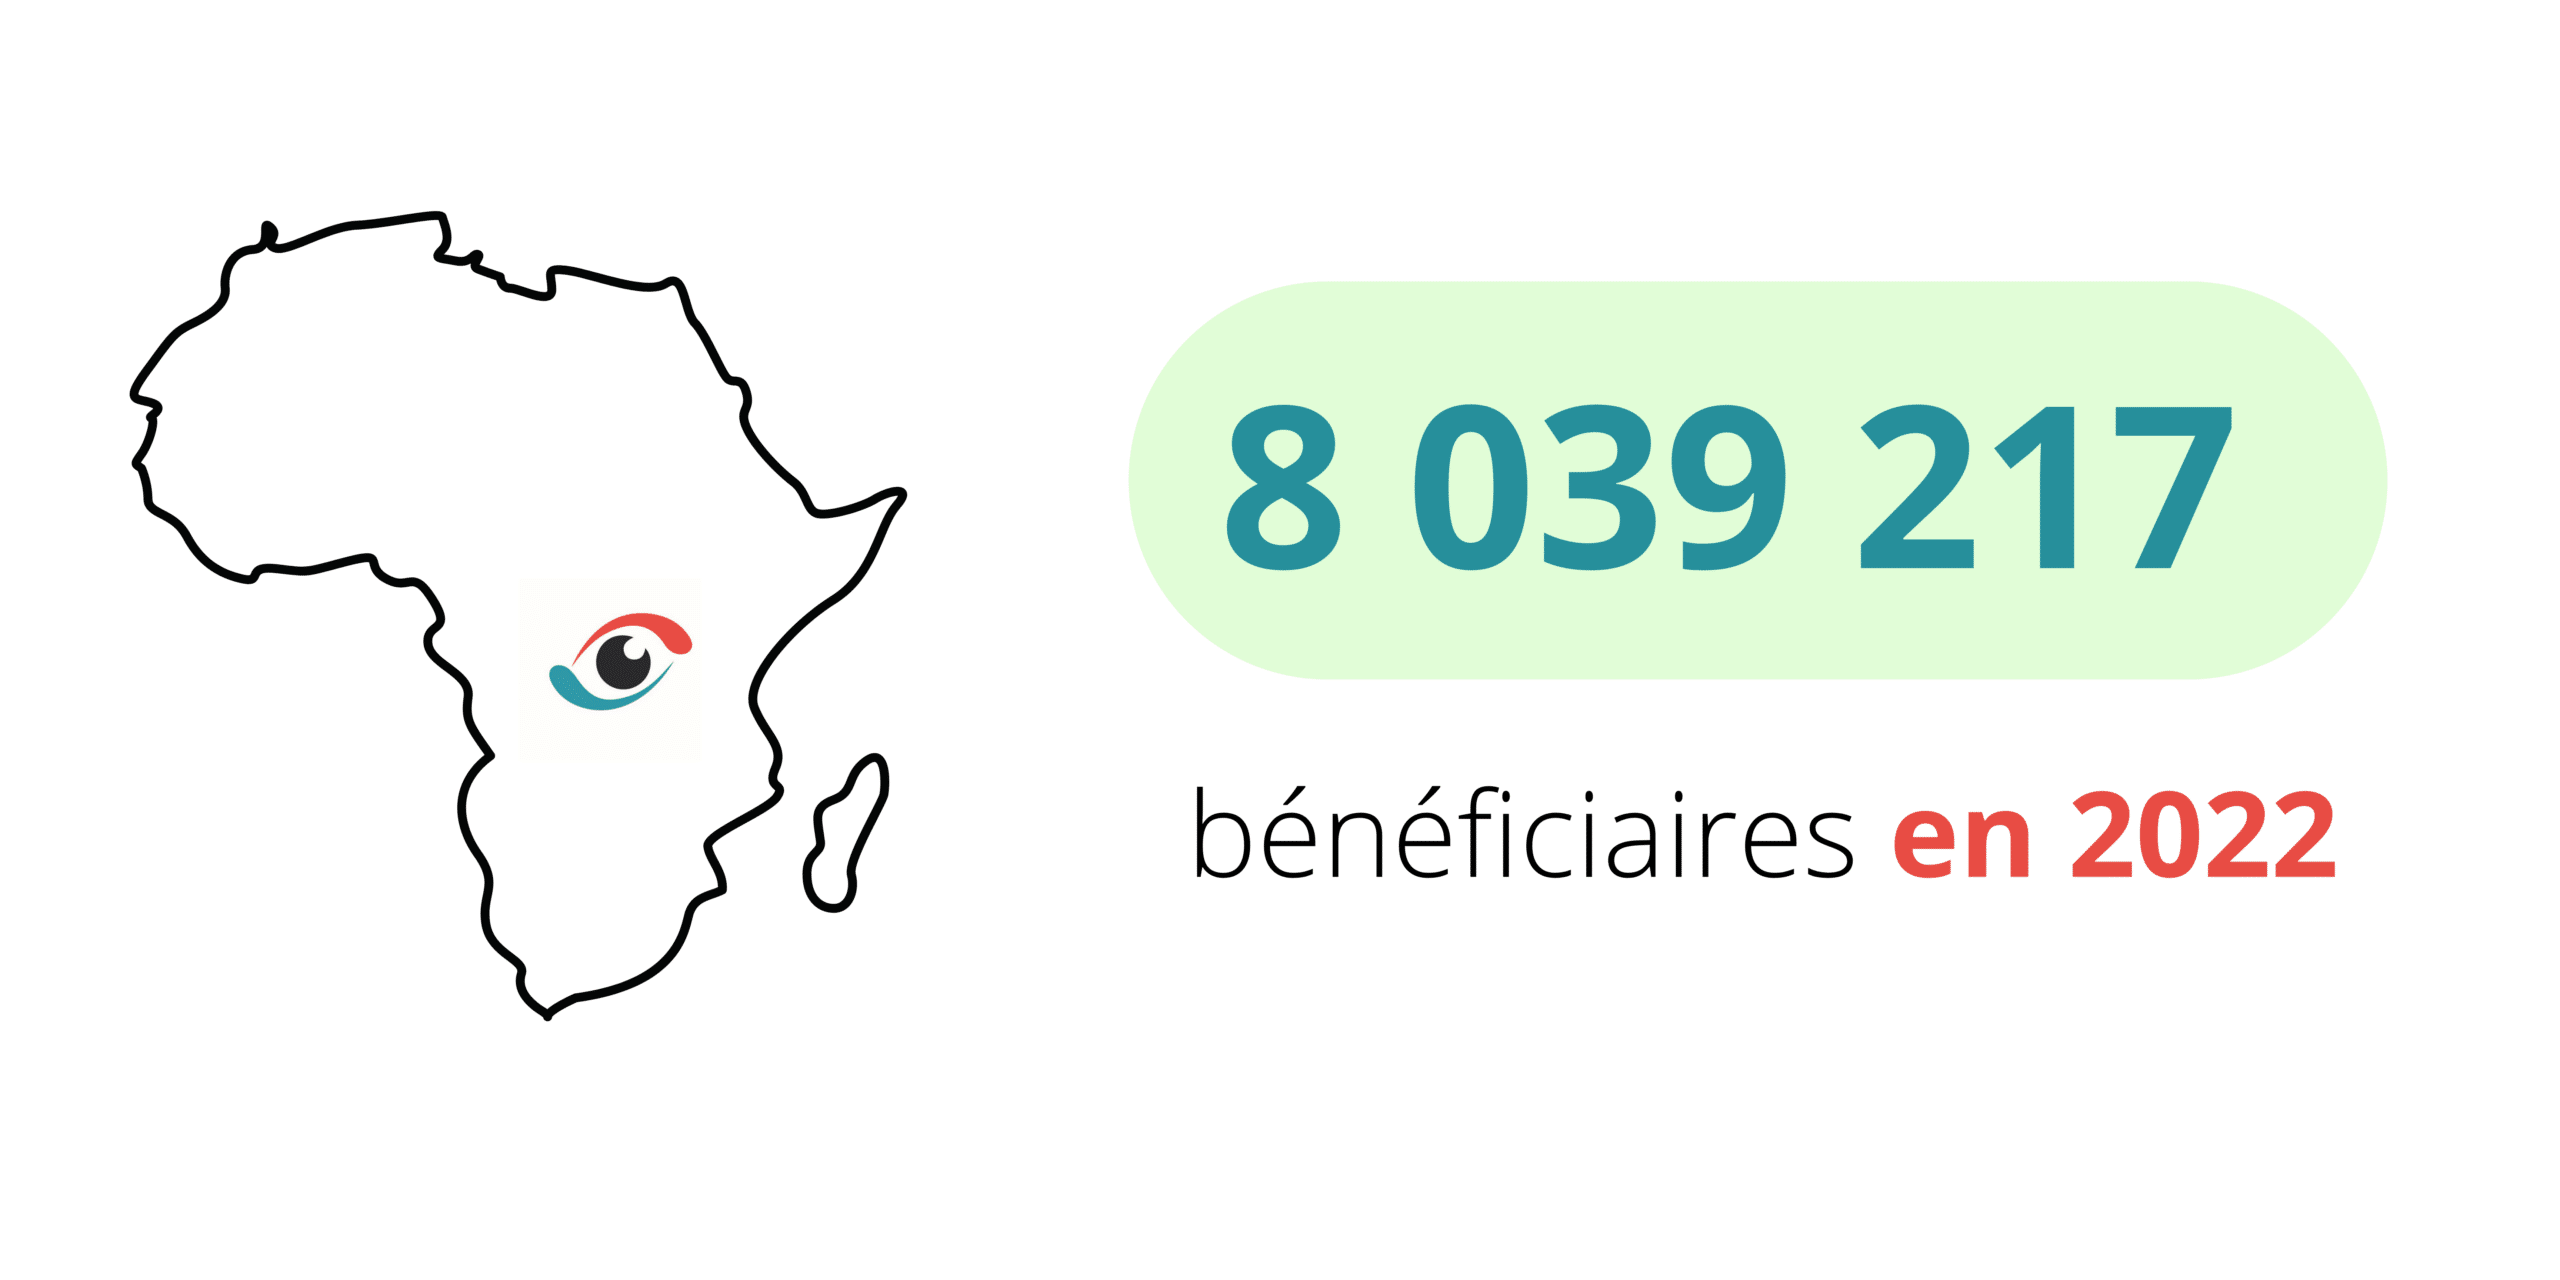 OPC en 2022 8 039 217 beneficiaires - L’Organisation pour la Prévention de la Cécité (OPC) encourage le renforcement des systèmes de santé oculaire et lutte pour le droit à la vue des populations les plus négligées en Afrique francophone.